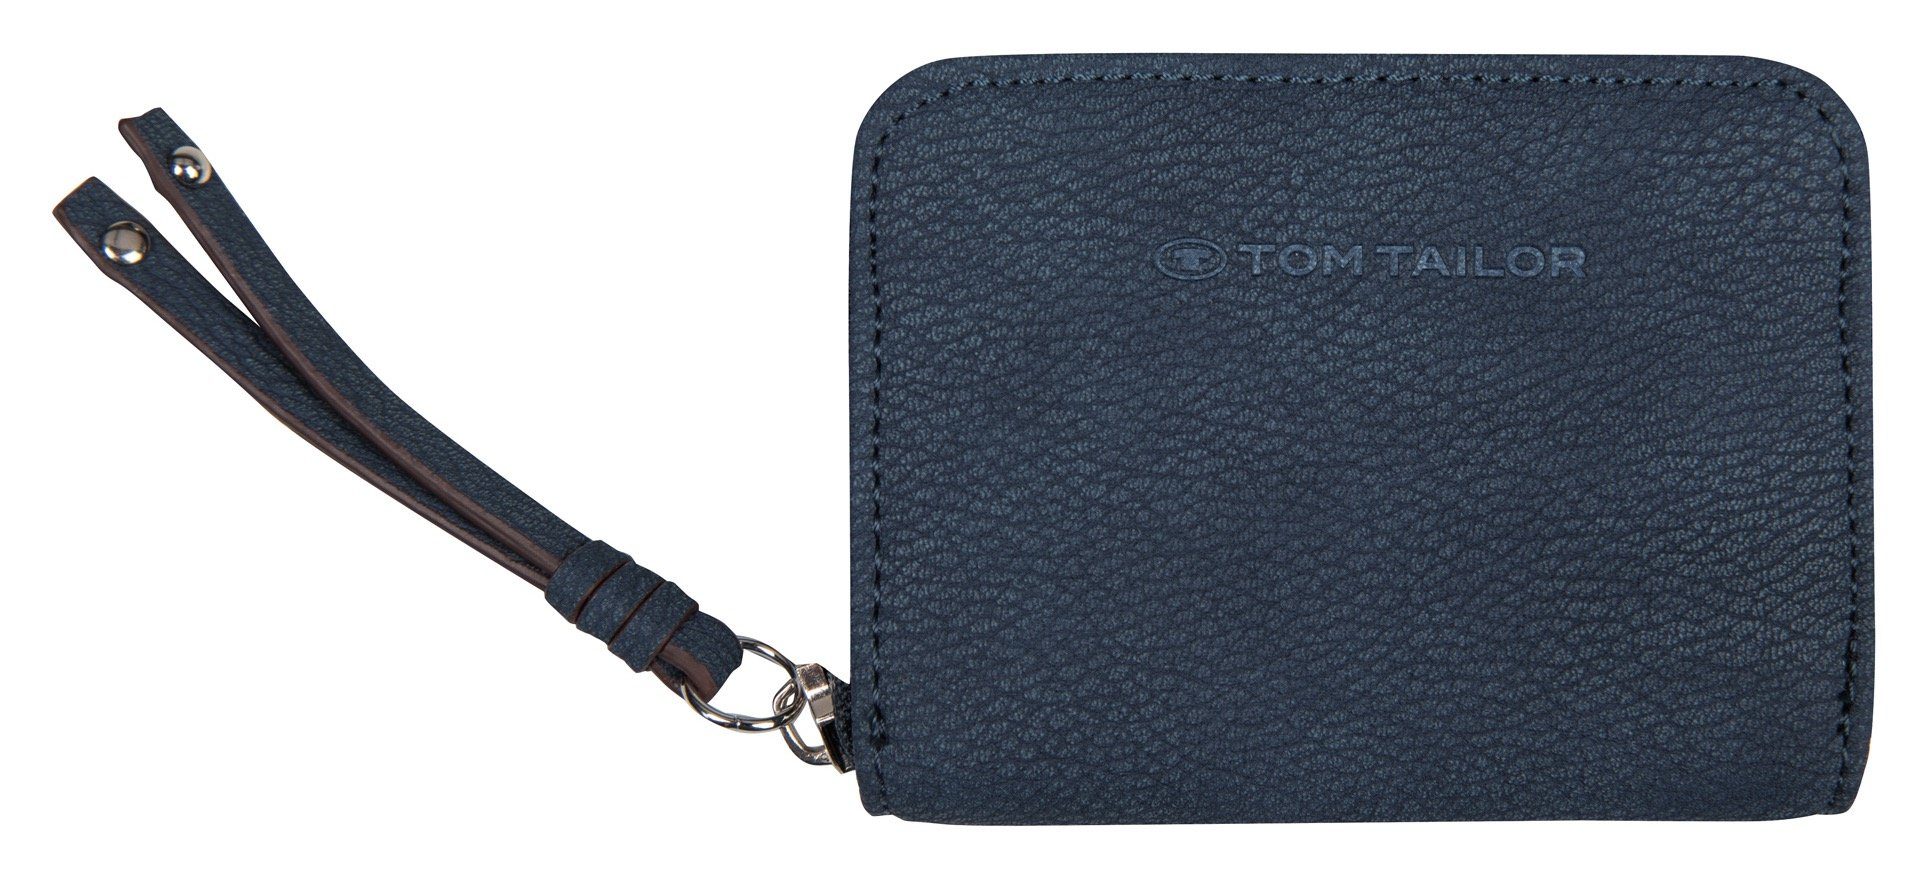 TOM TAILOR Geldbörse CAIA WALLETS Small zip wallet, mit Zierband am Reißverschluss dunkelblau